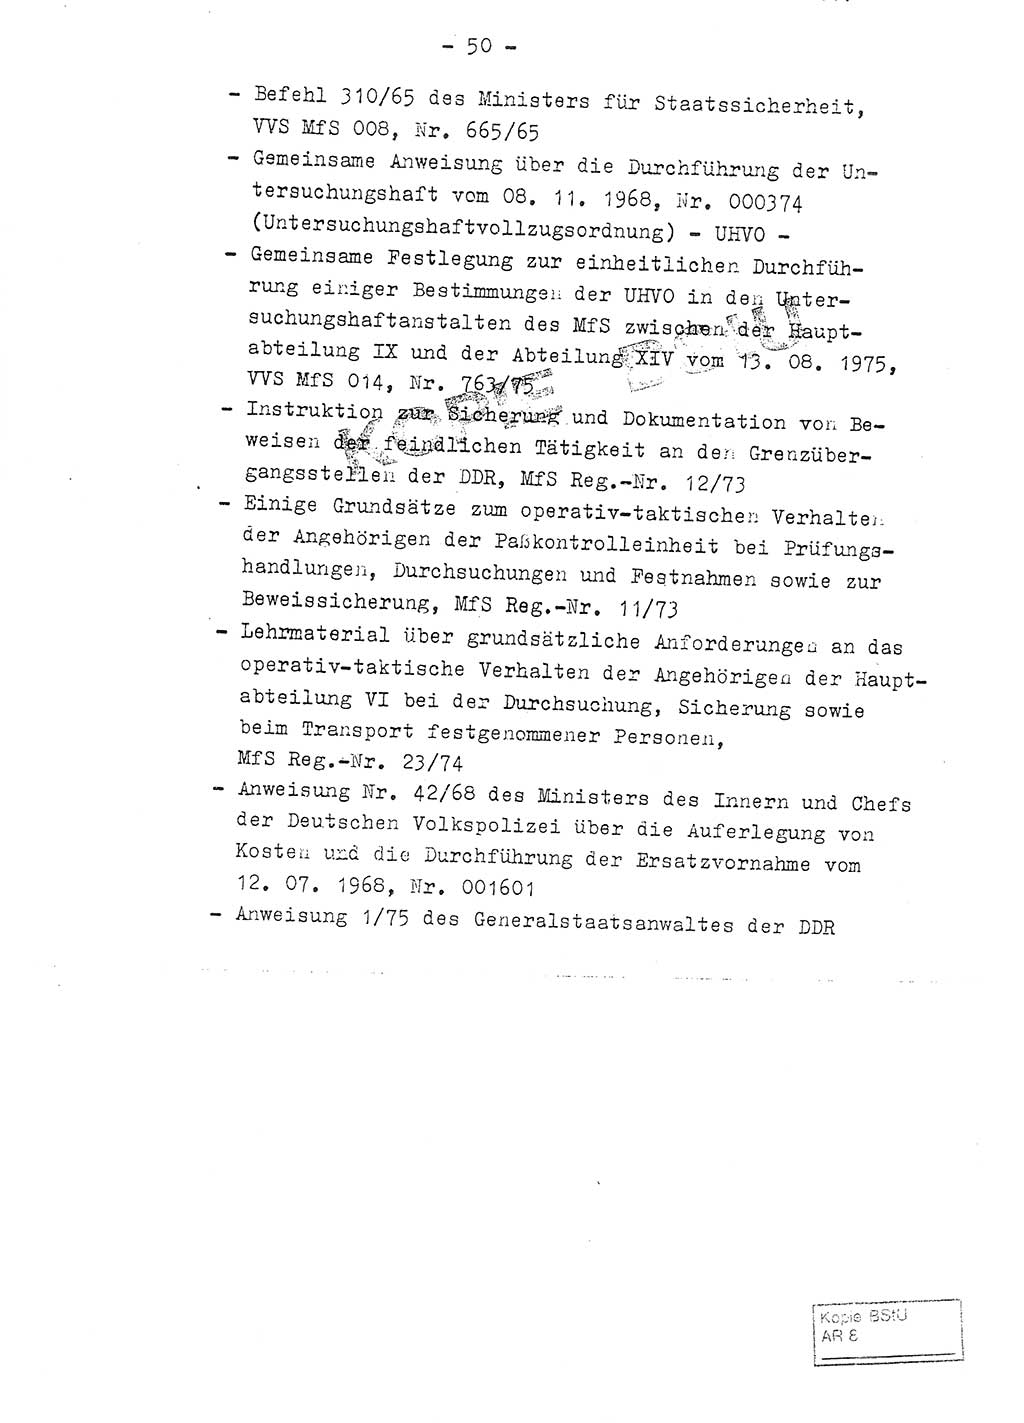 Fachschulabschlußarbeit Leutnant Volkmar Taubert (HA Ⅸ/9), Leutnant Axel Naumann (HA Ⅸ/9), Unterleutnat Detlef Debski (HA Ⅸ/9), Ministerium für Staatssicherheit (MfS) [Deutsche Demokratische Republik (DDR)], Juristische Hochschule (JHS), Vertrauliche Verschlußsache (VVS) 001-699/76, Potsdam 1976, Seite 50 (FS-Abschl.-Arb. MfS DDR JHS VVS 001-699/76 1976, S. 50)